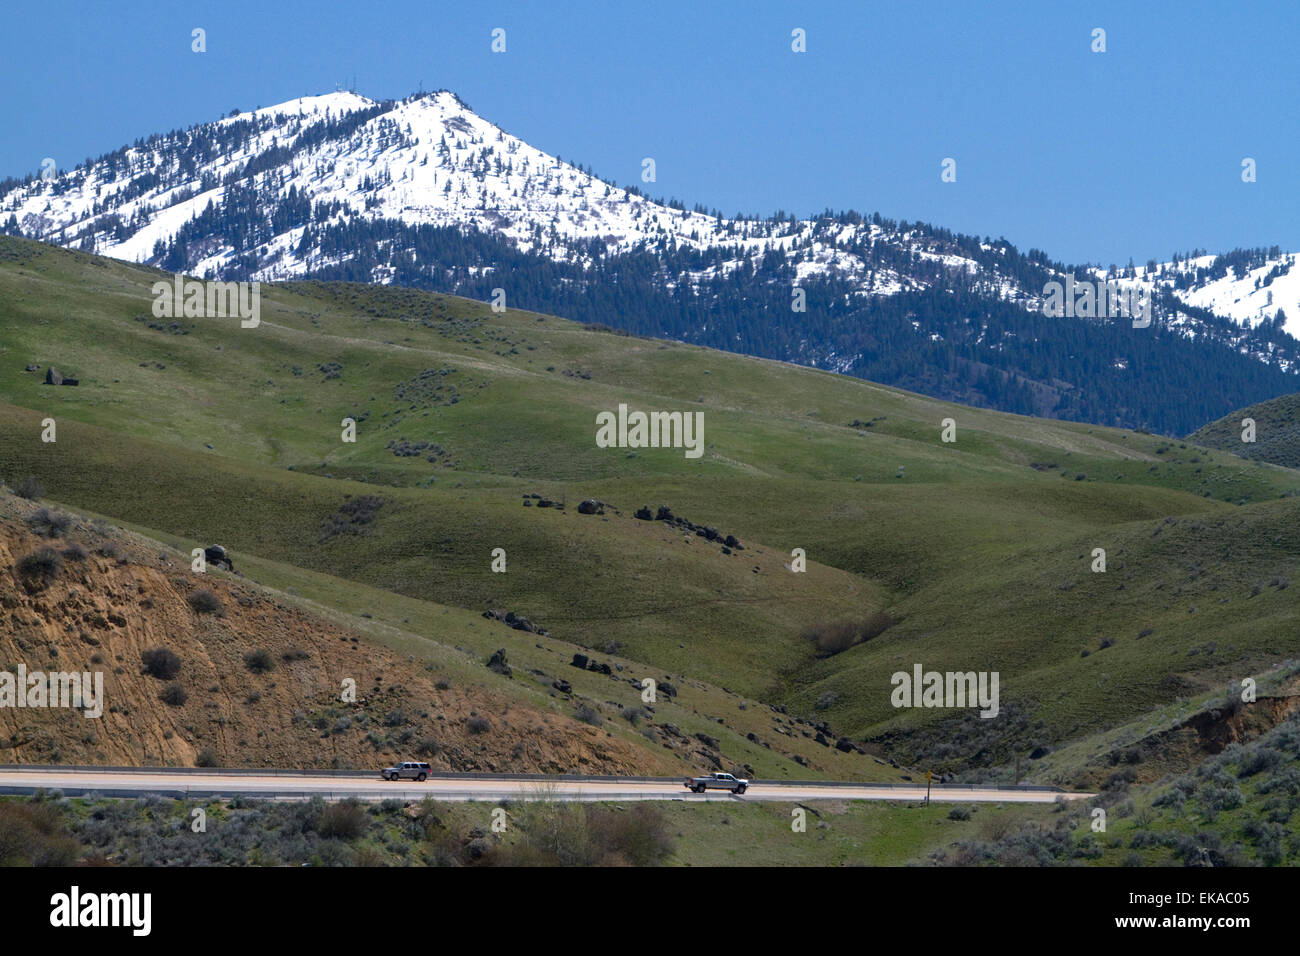 Una vista del nevado Shaeffer Butte hogar de Bogus Basin ski resort, a lo largo de la autopista 55 en el condado de Boise, Idaho, USA. Foto de stock